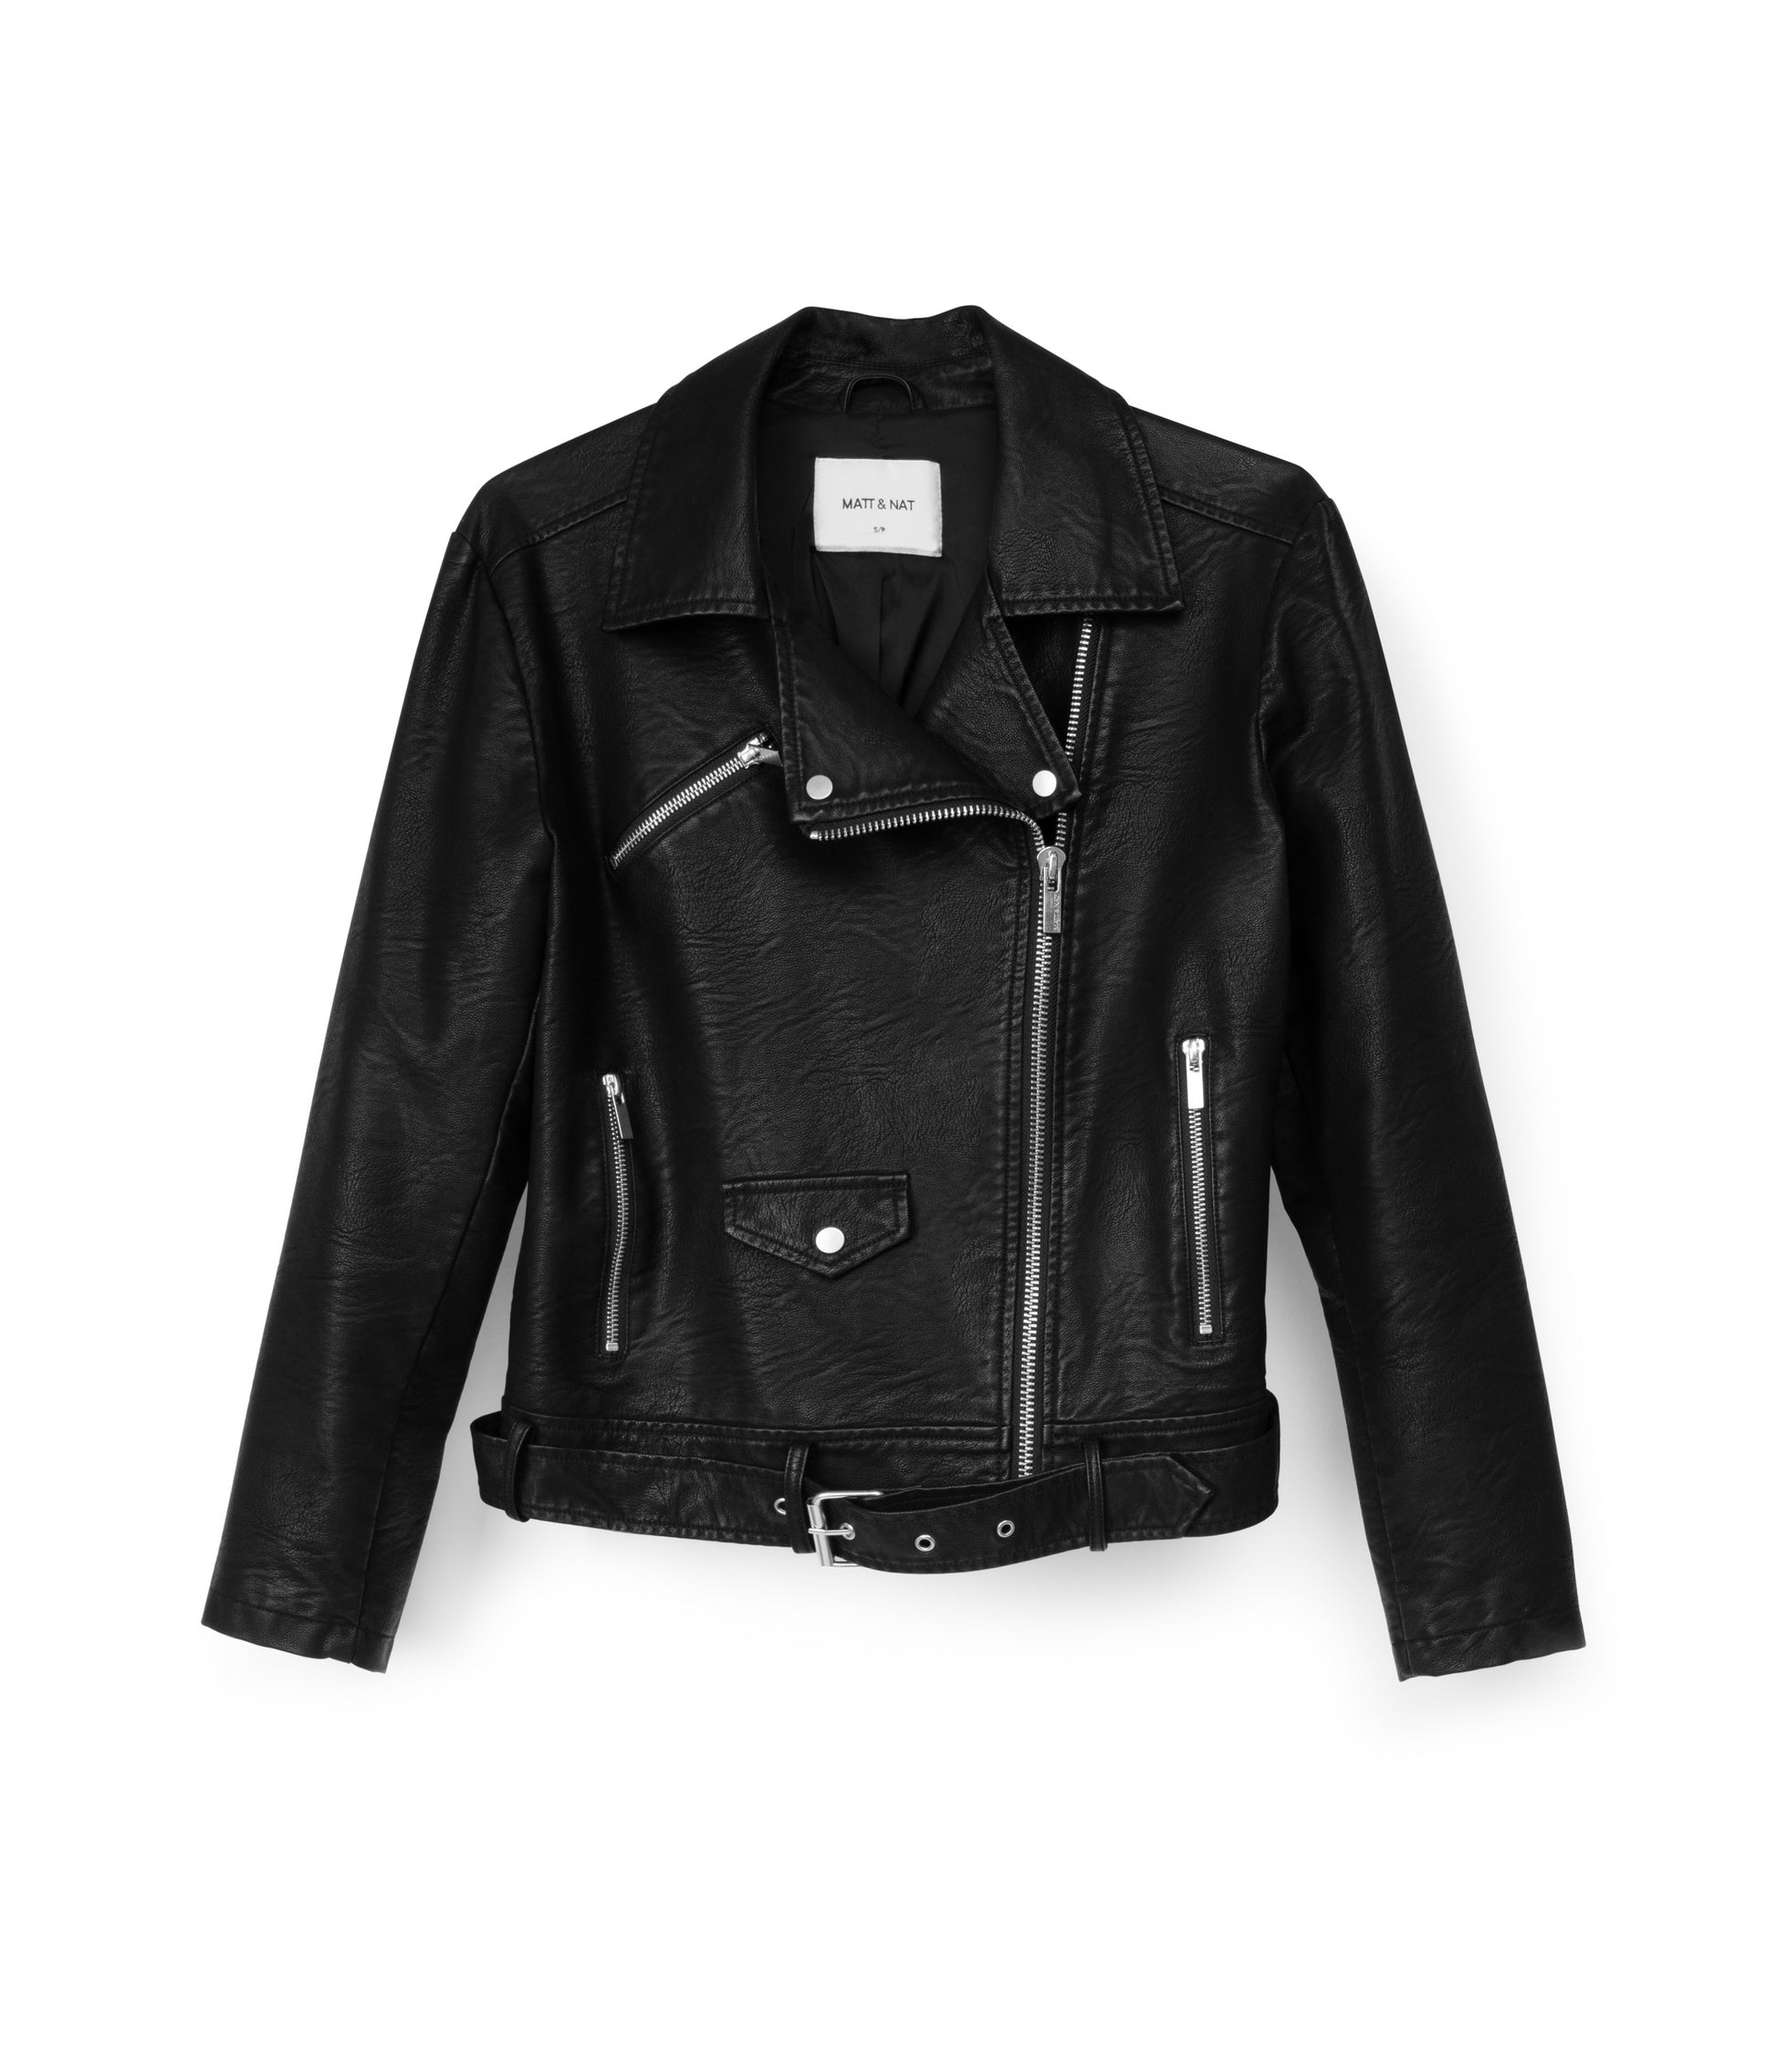 Vegan Leather Jacket - Black Jacket - Moto Jacket - Lulus